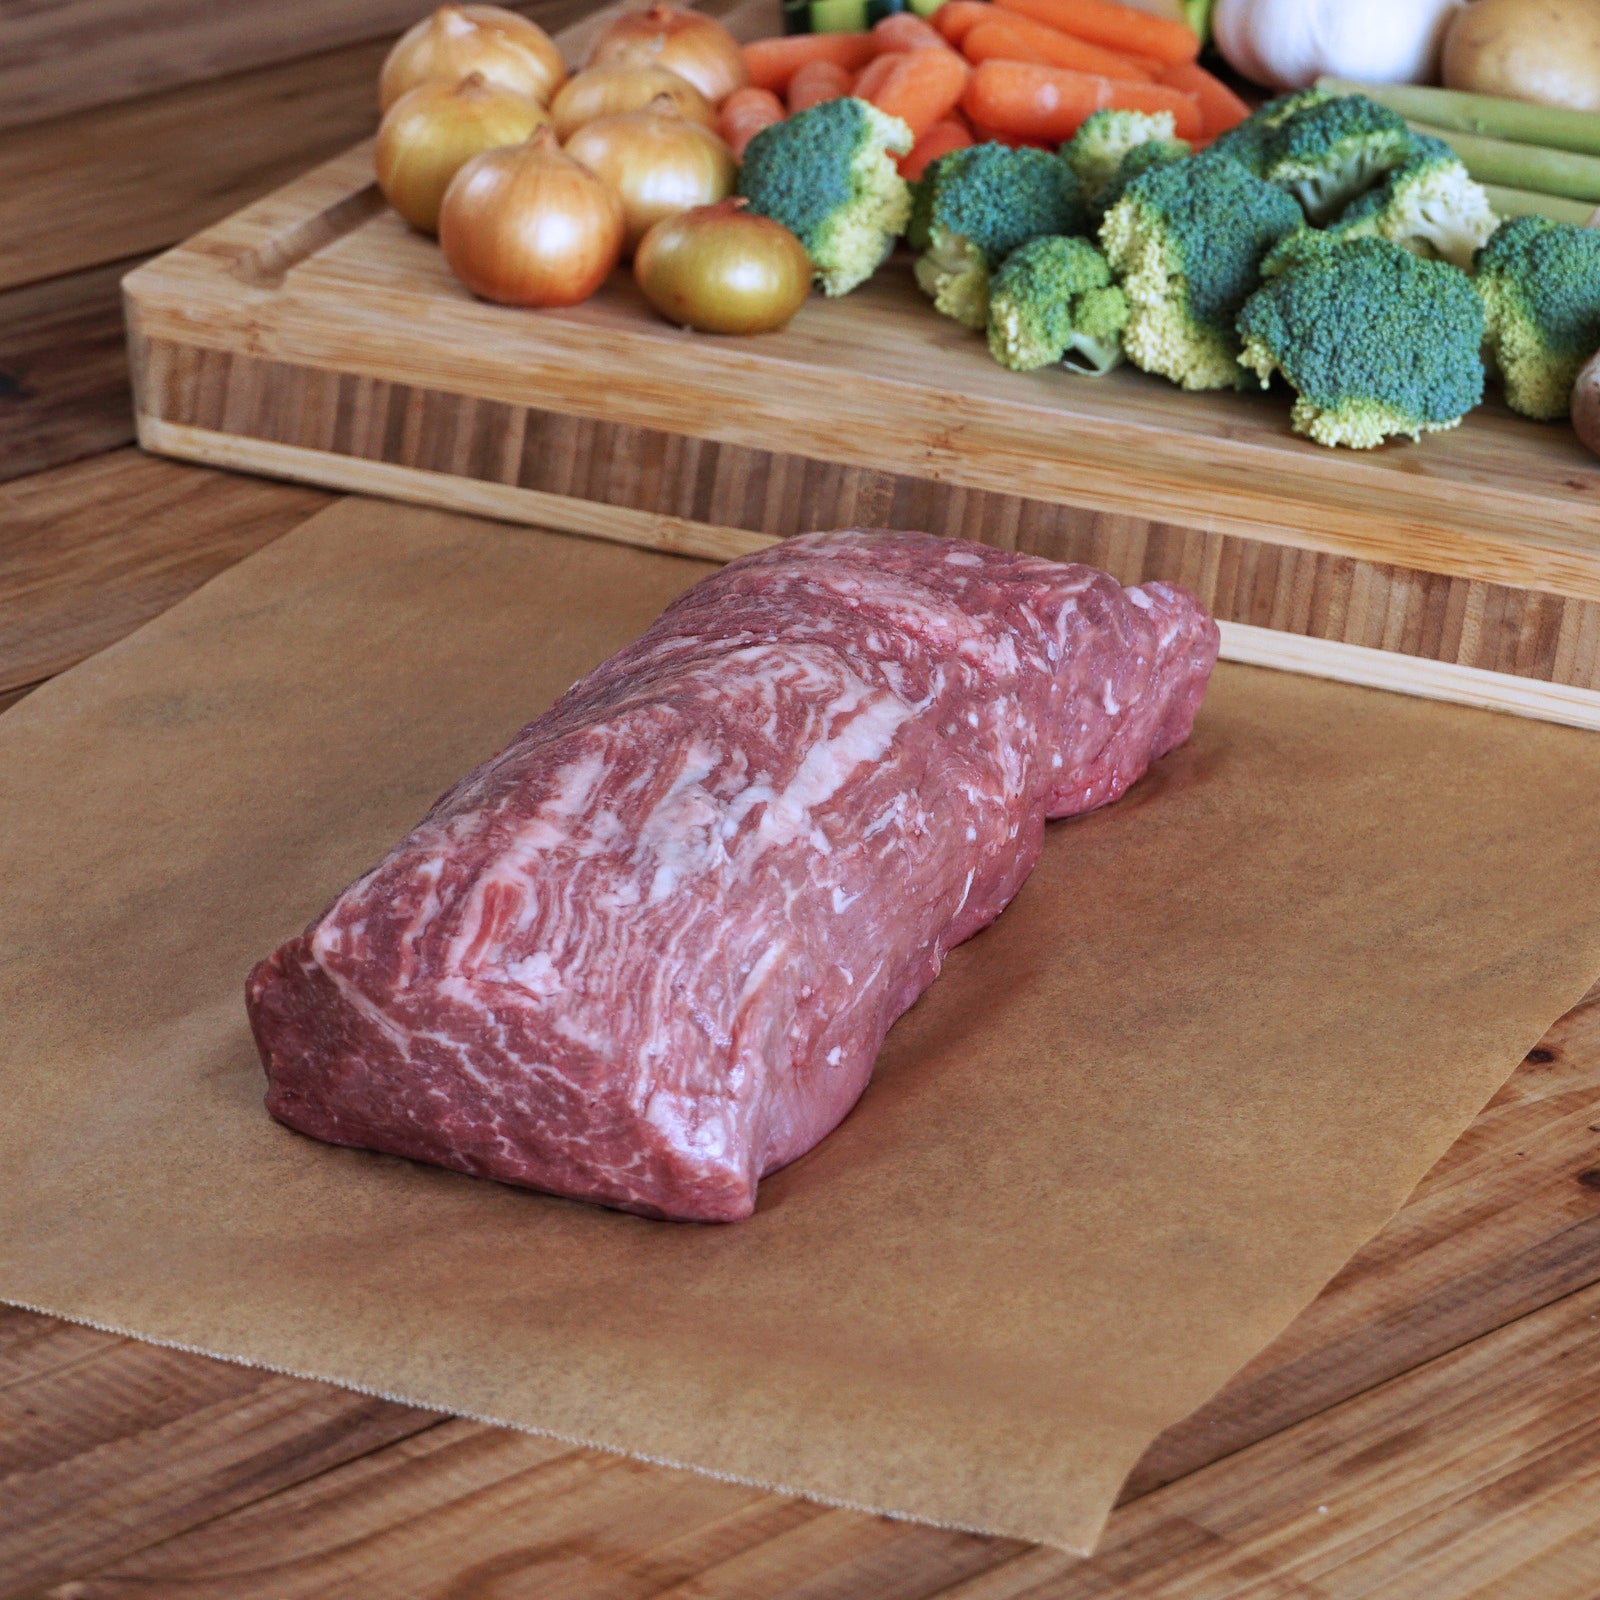 モーガン牧場ビーフ Usda プライム ヒレ ブロック グラスフェッド グレインフィニッシュ 塊肉 ロースト 500g 1kg